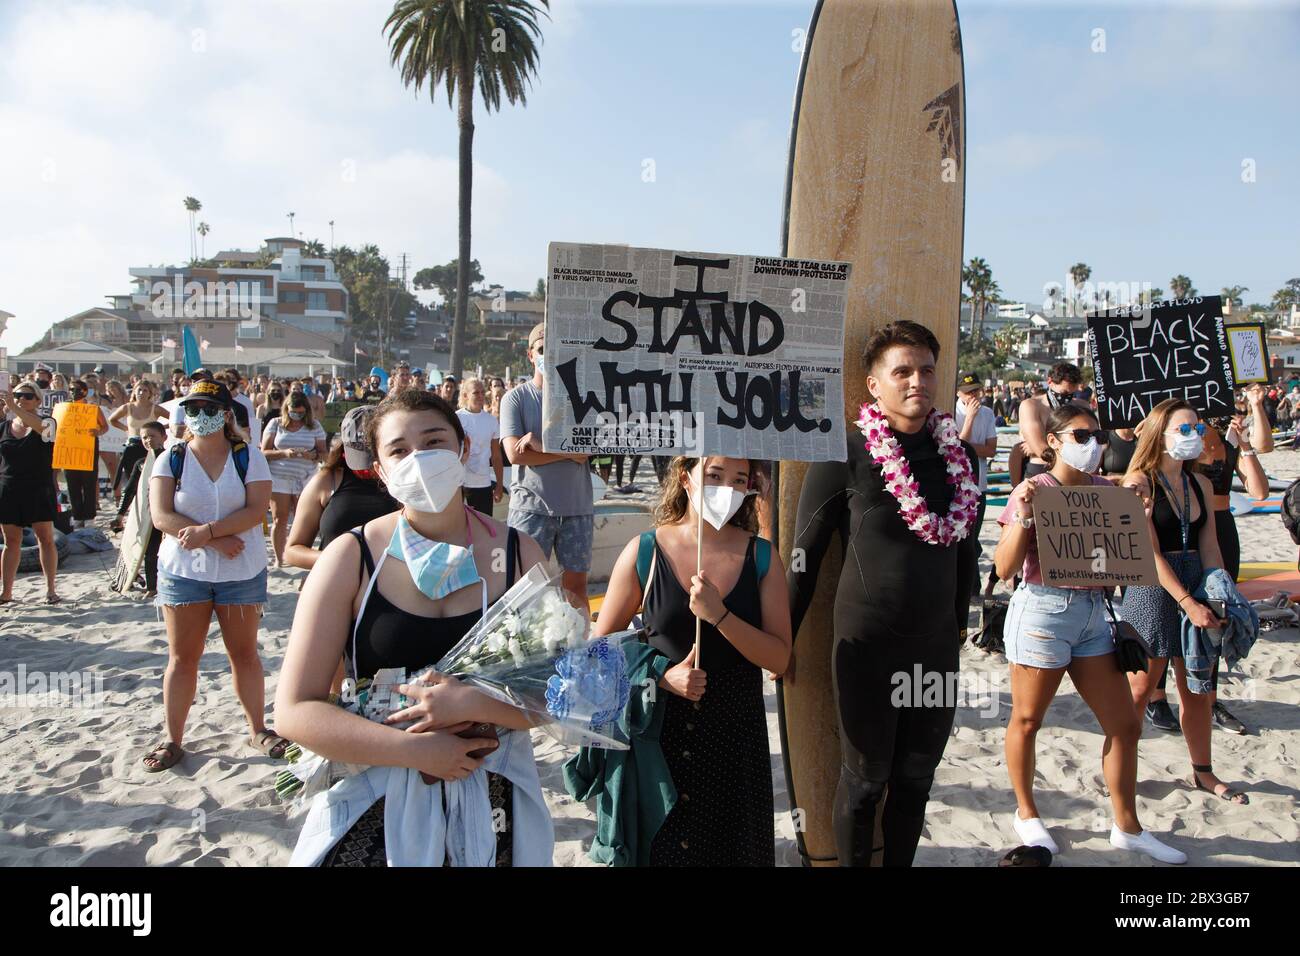 Une manifestation Black Lives Matter à Moonlight Beach à Encinitas, Californie. La manifestation a été précipitée par le meurtre de l'américain George Floyd. Banque D'Images